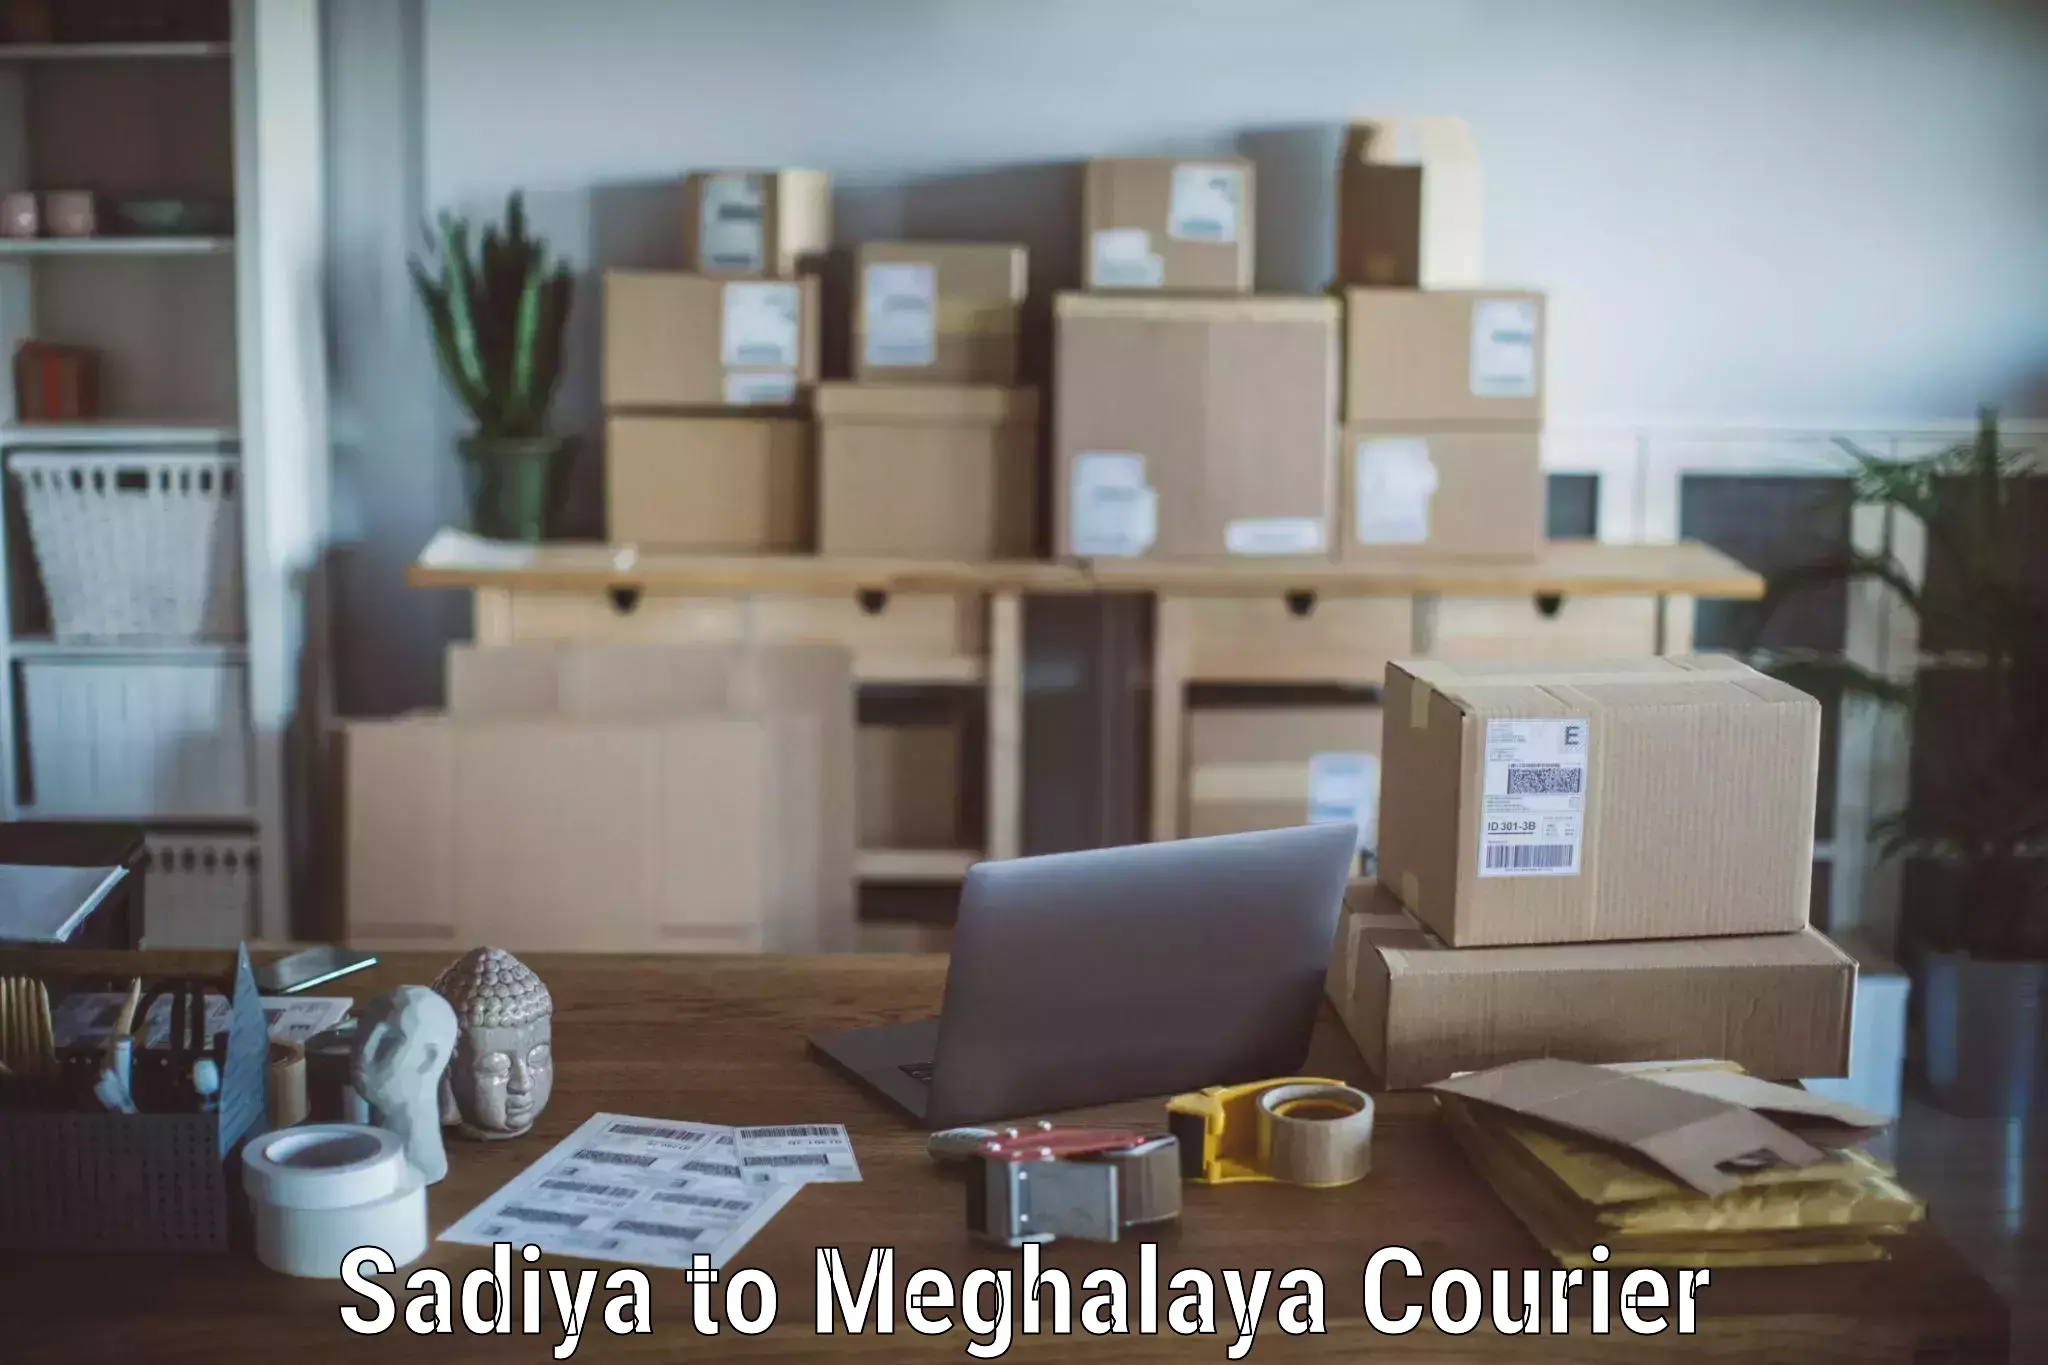 Furniture transport experts Sadiya to Meghalaya